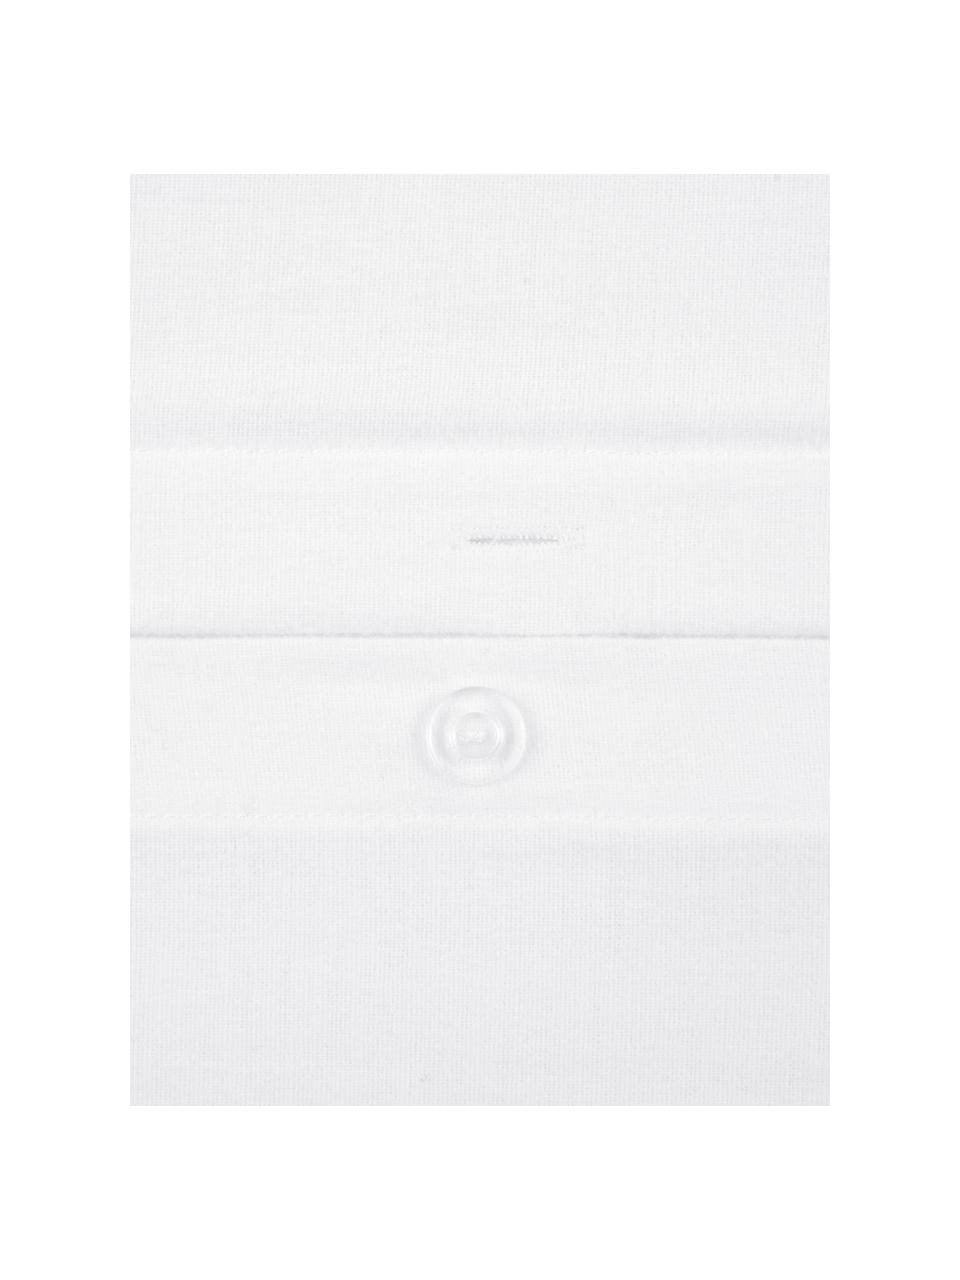 Flanelové povlečení Biba, Bílá, 140 x 200 cm + 1 polštář 80 x 80 cm